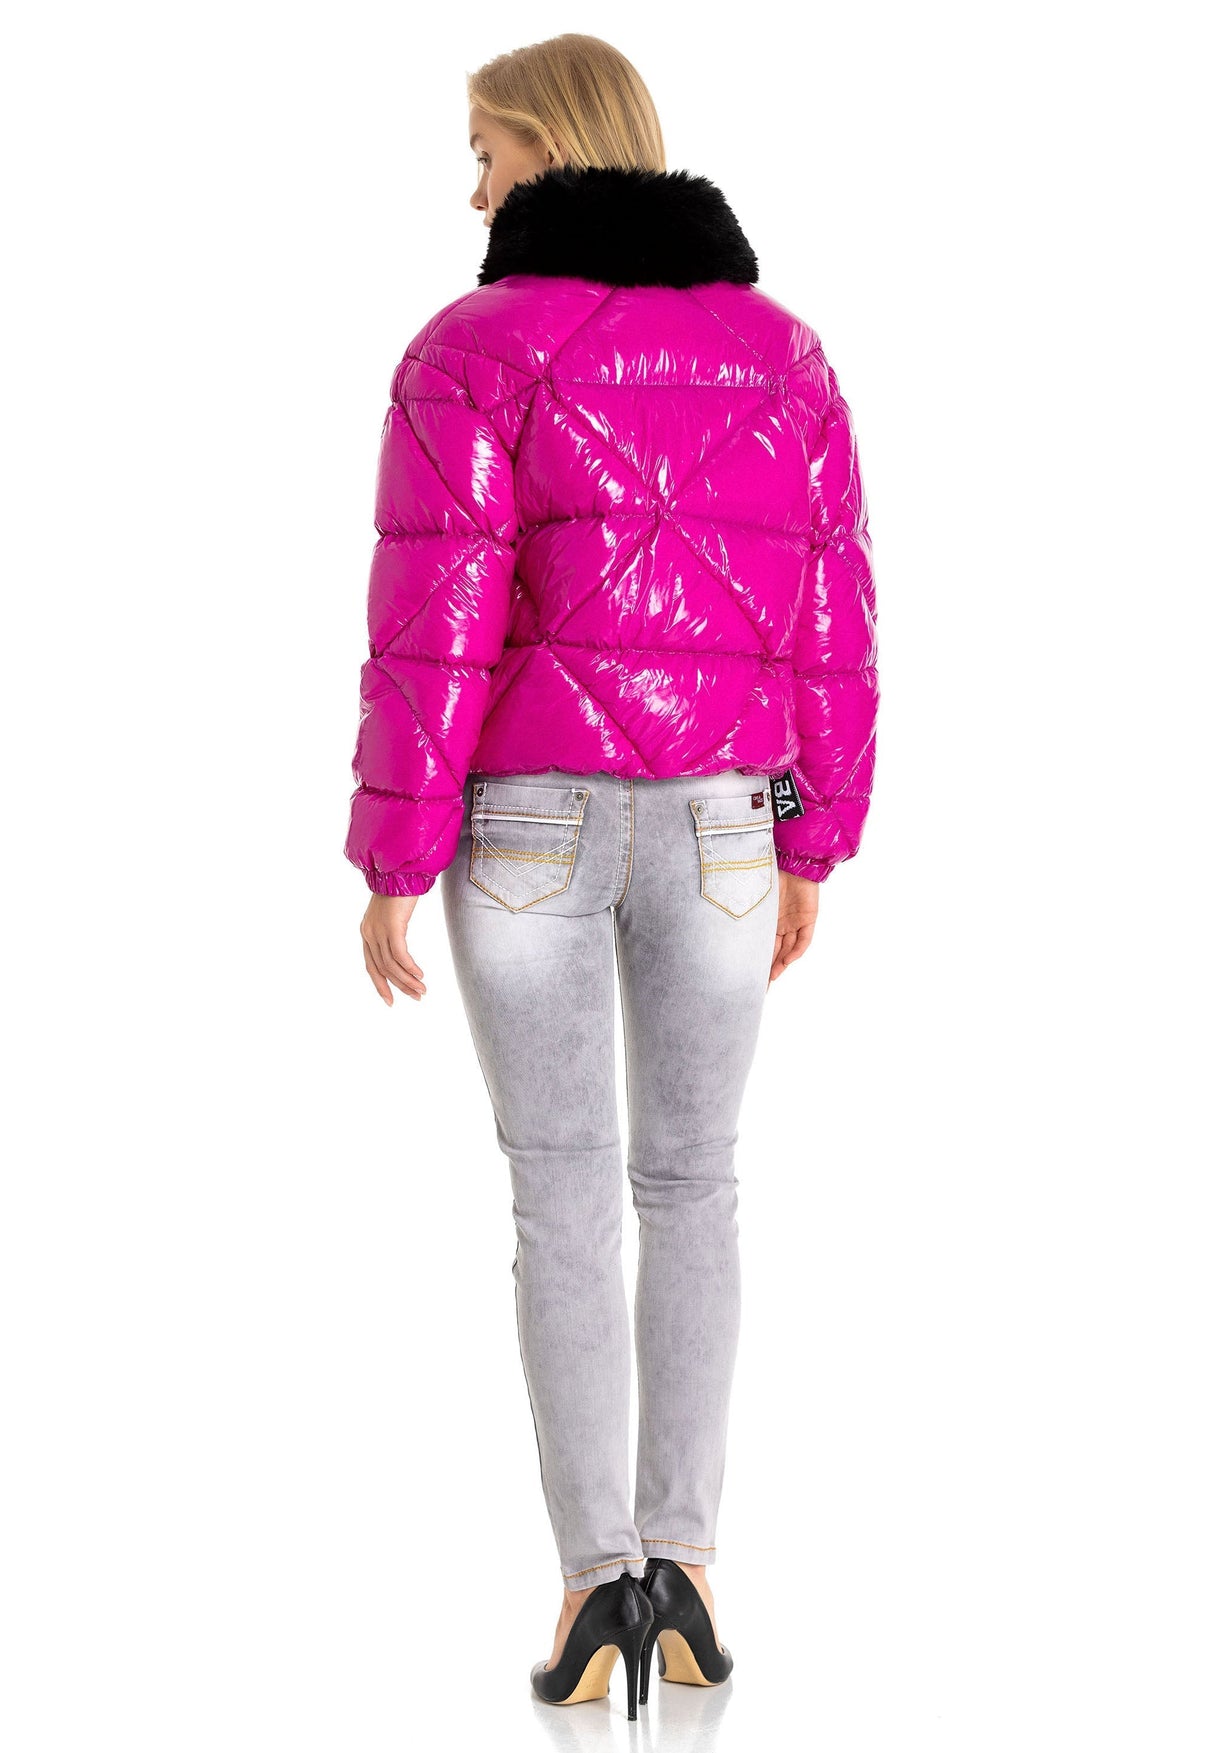 Giacca invernale femminile WM134 con collare di pelliccia sintetica